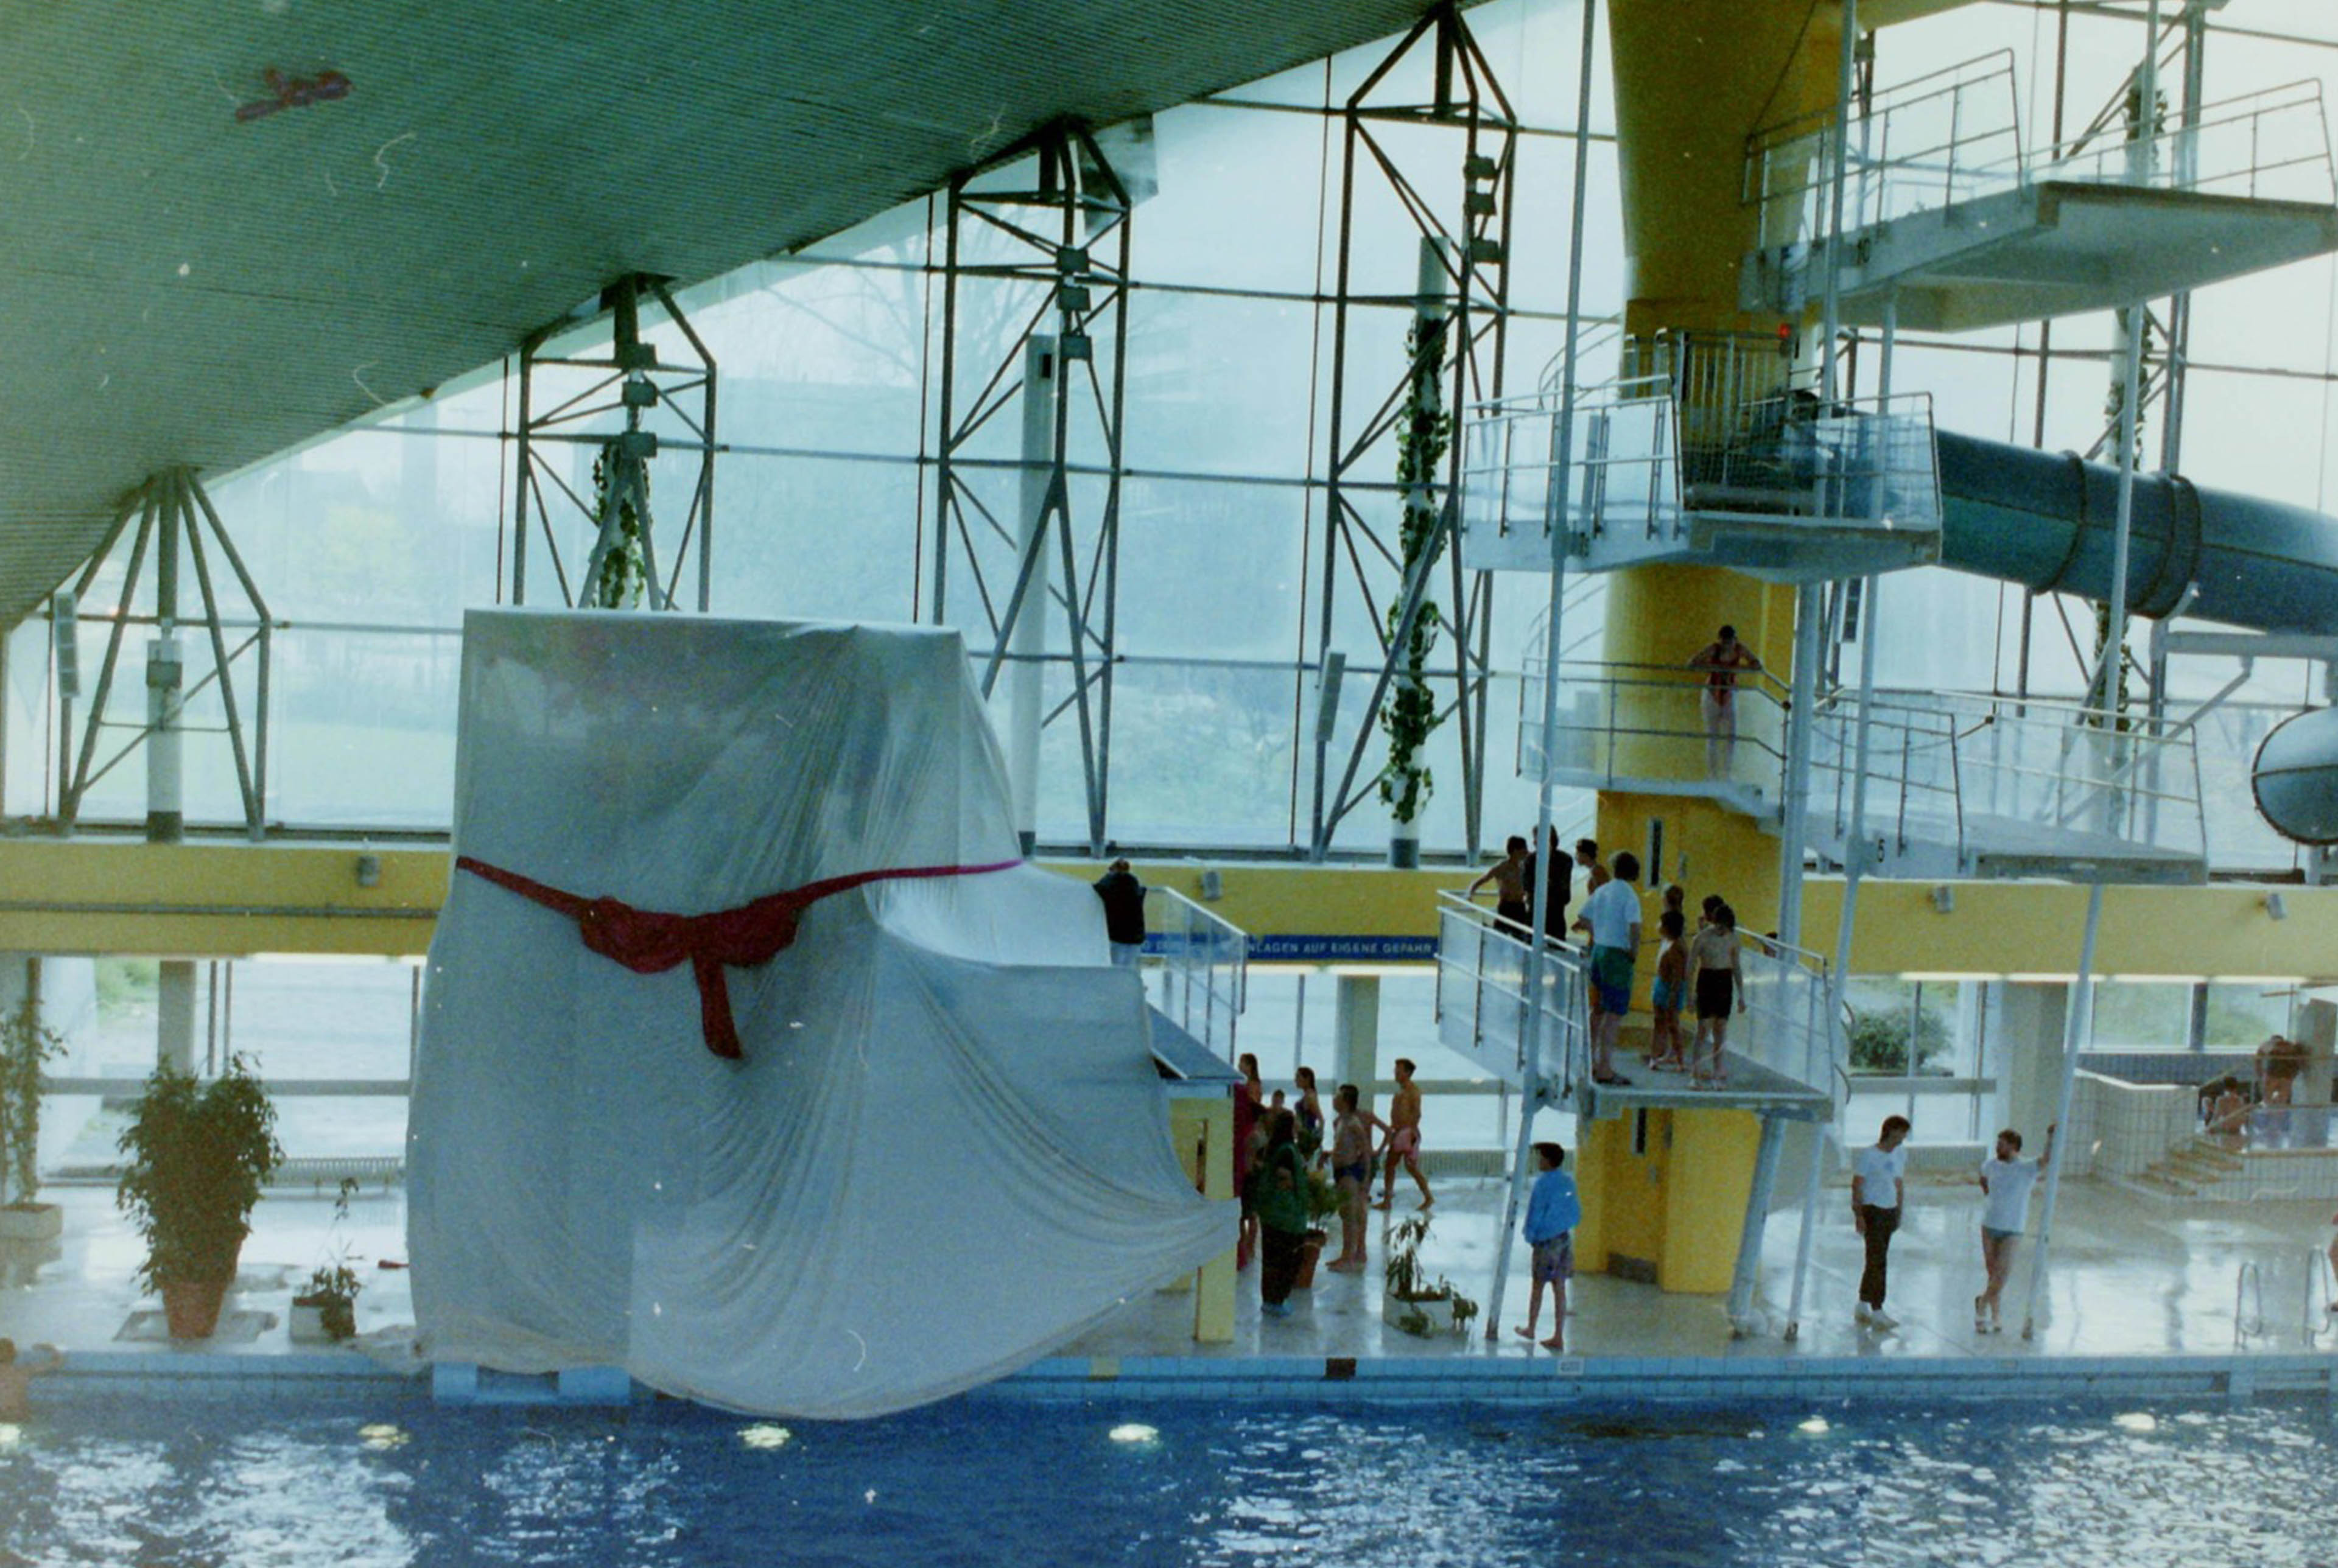 Blick auf ein Schwimmbecken mit Sprungturm. Auf und neben dem Sprungturm stehen Personen. Daneben überdeckt ein weißes Tuch mit roter Schleife etwas großes als Überraschung.